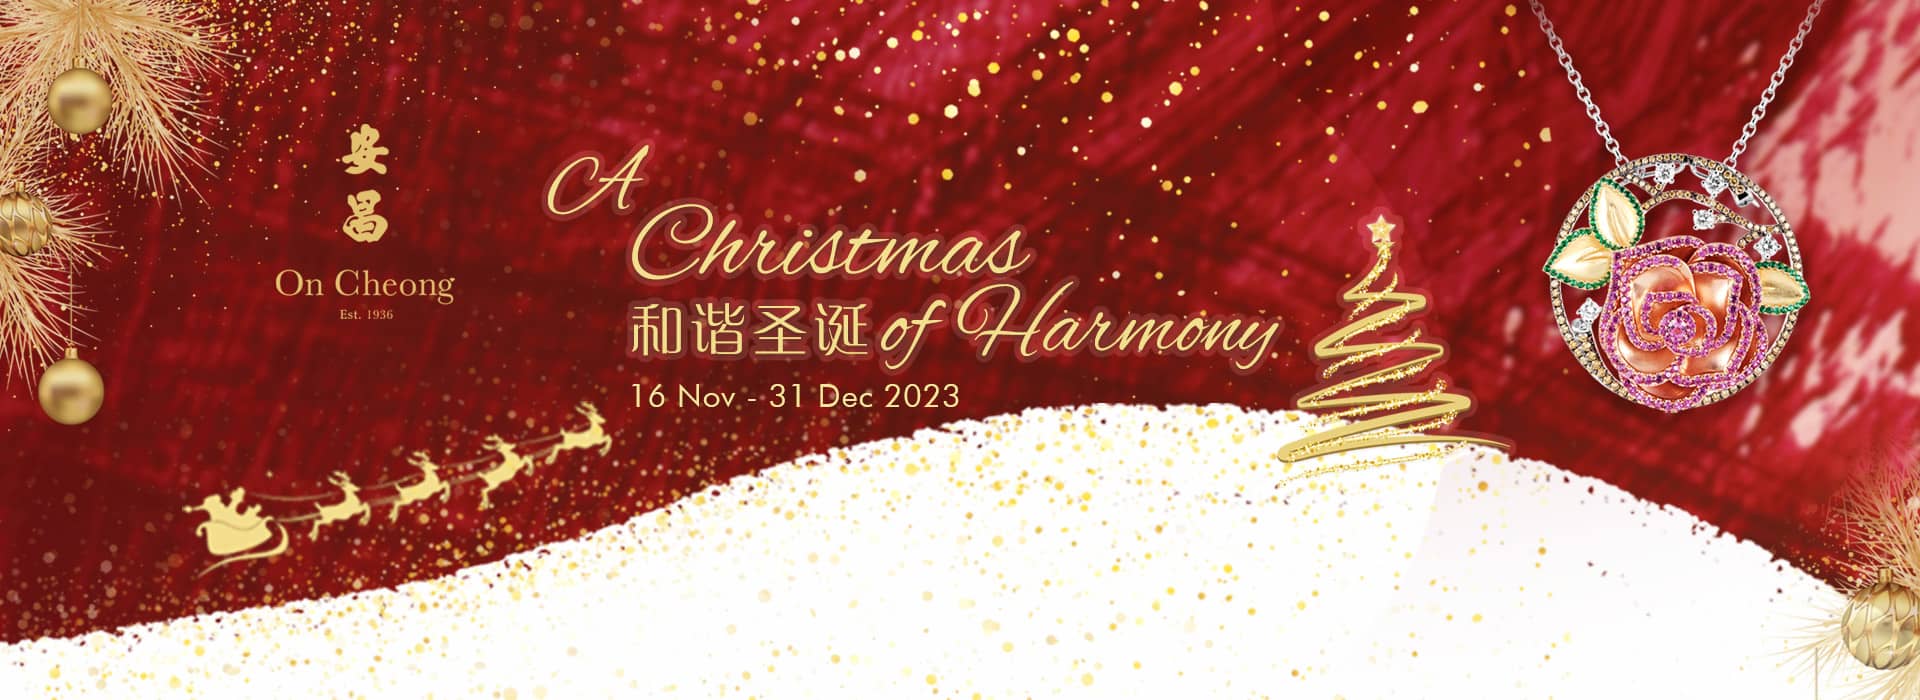 On Cheong Jewellery Christmas of Harmony